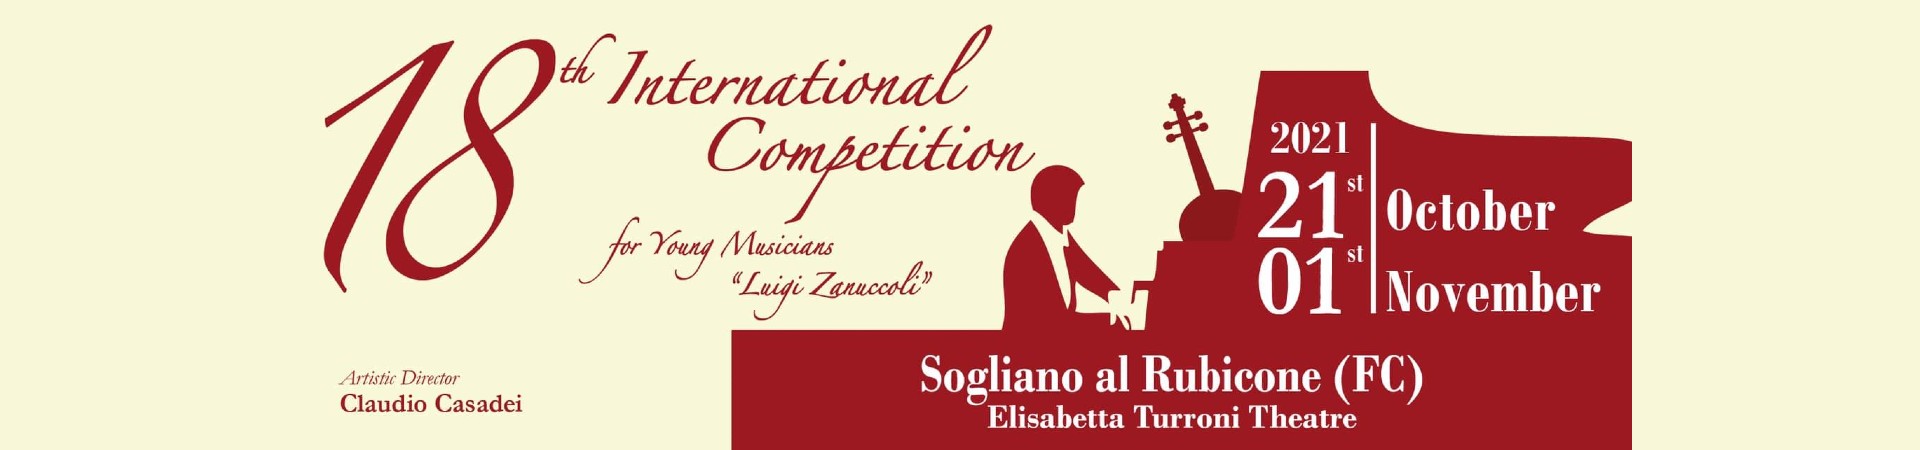 Visit-Sogliano-al-Rubicone-Eventi-concorso-zanuccoli.jpg